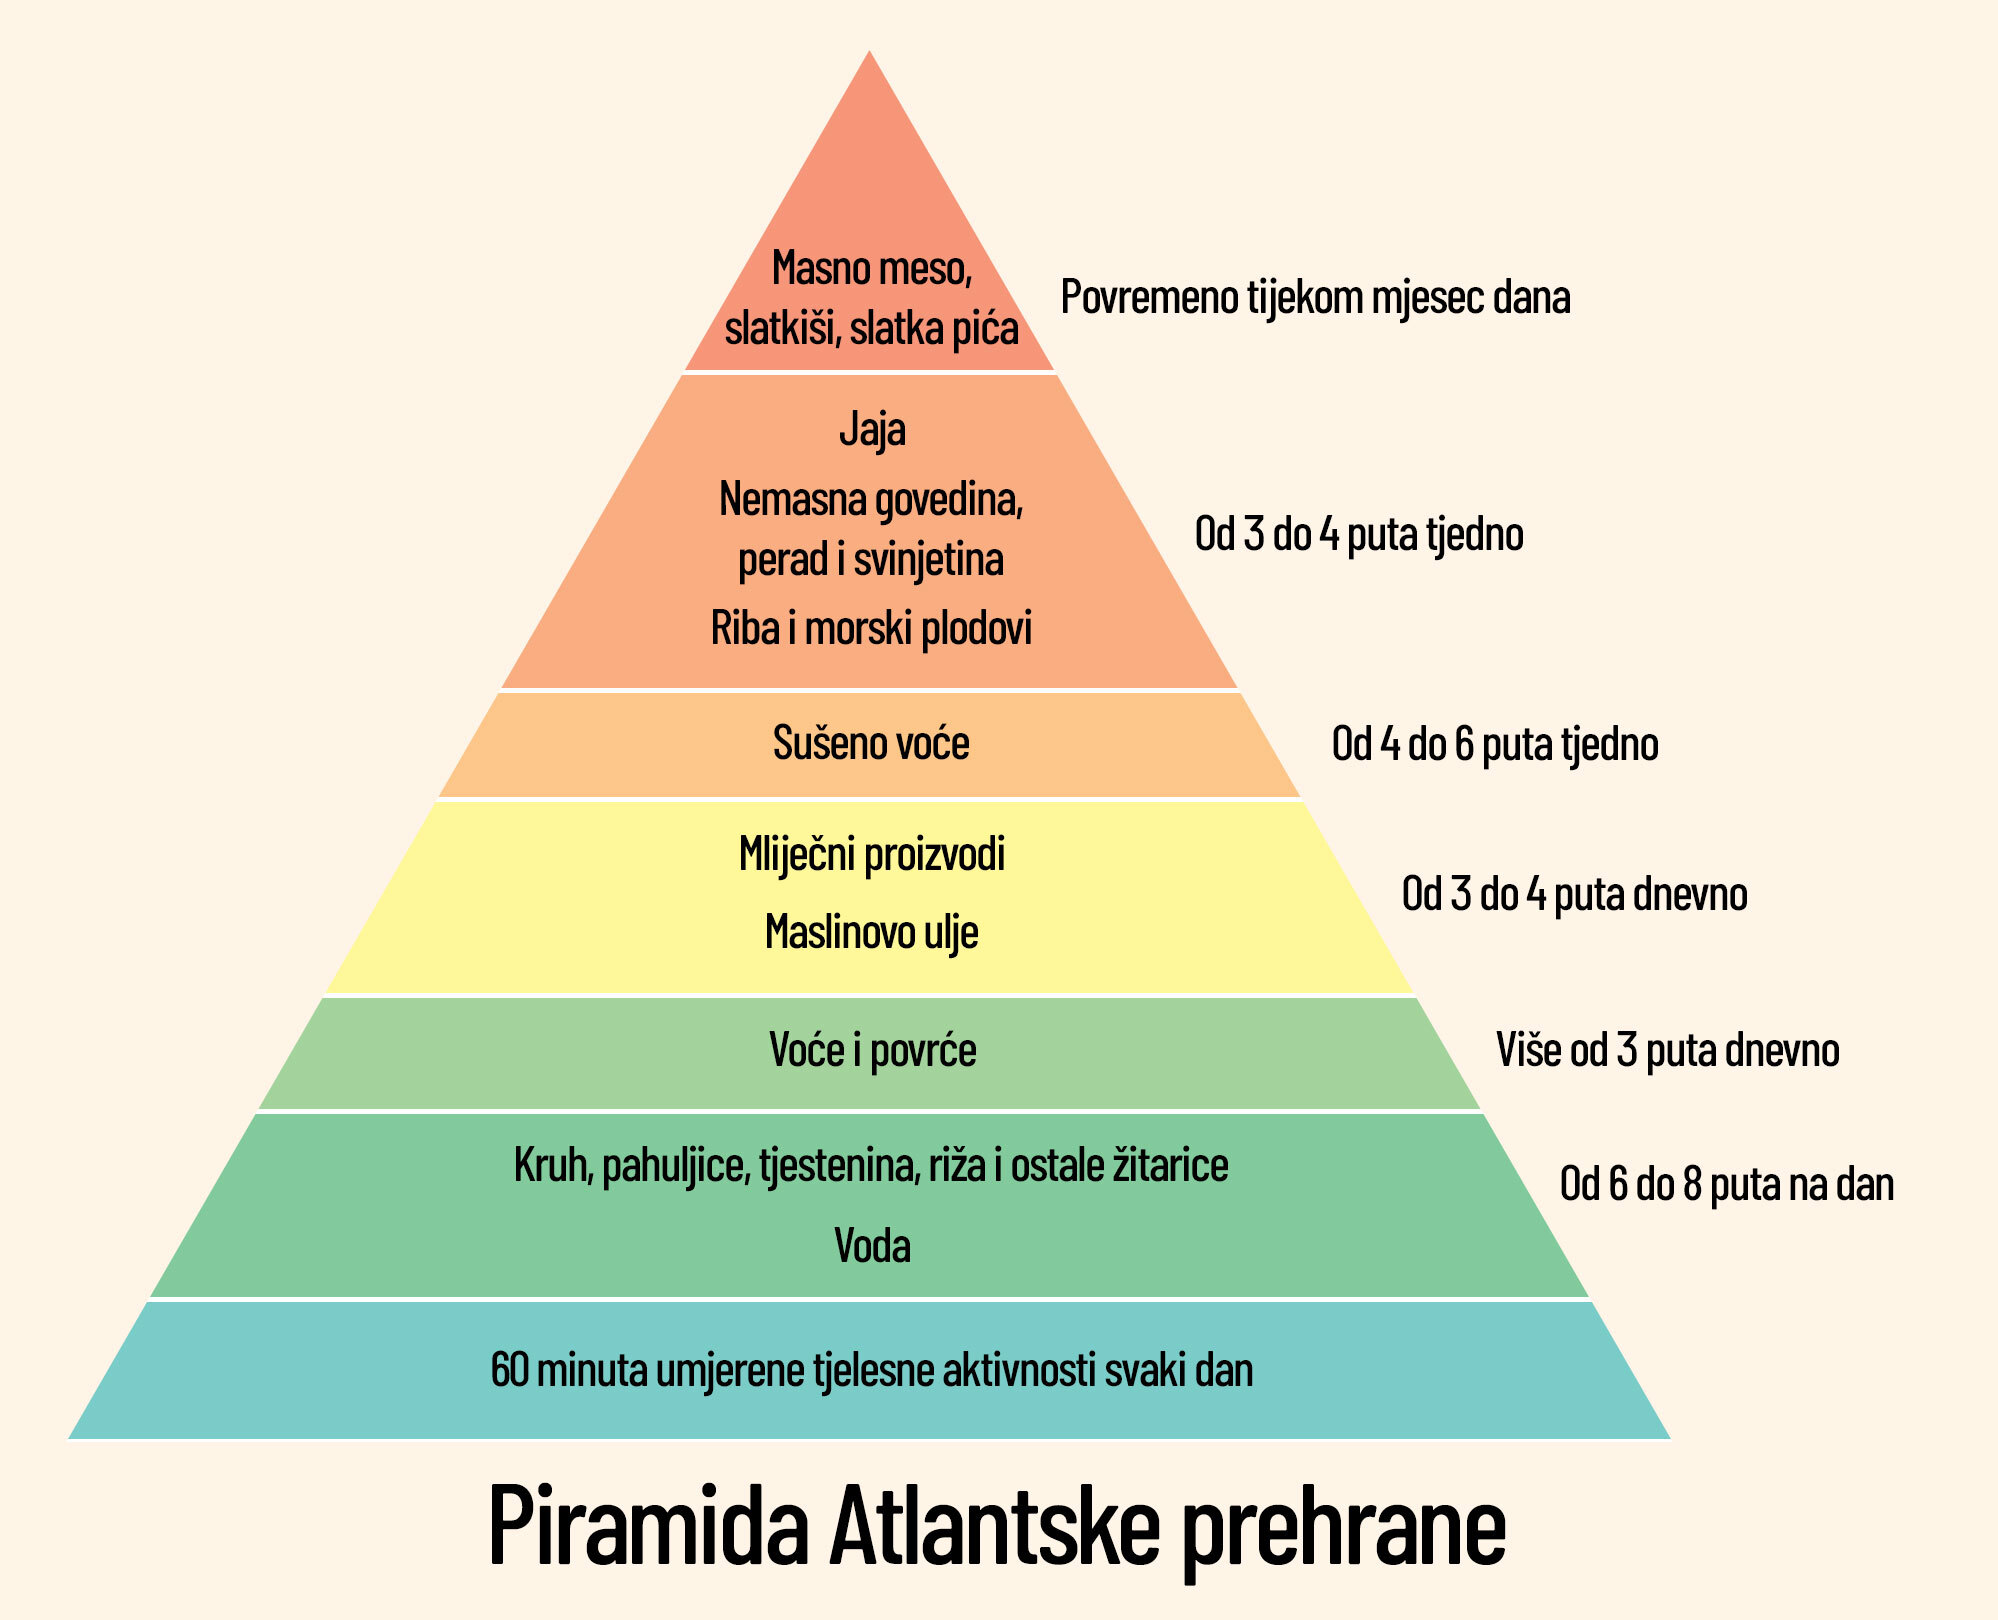 Piramida atlantske prehrane